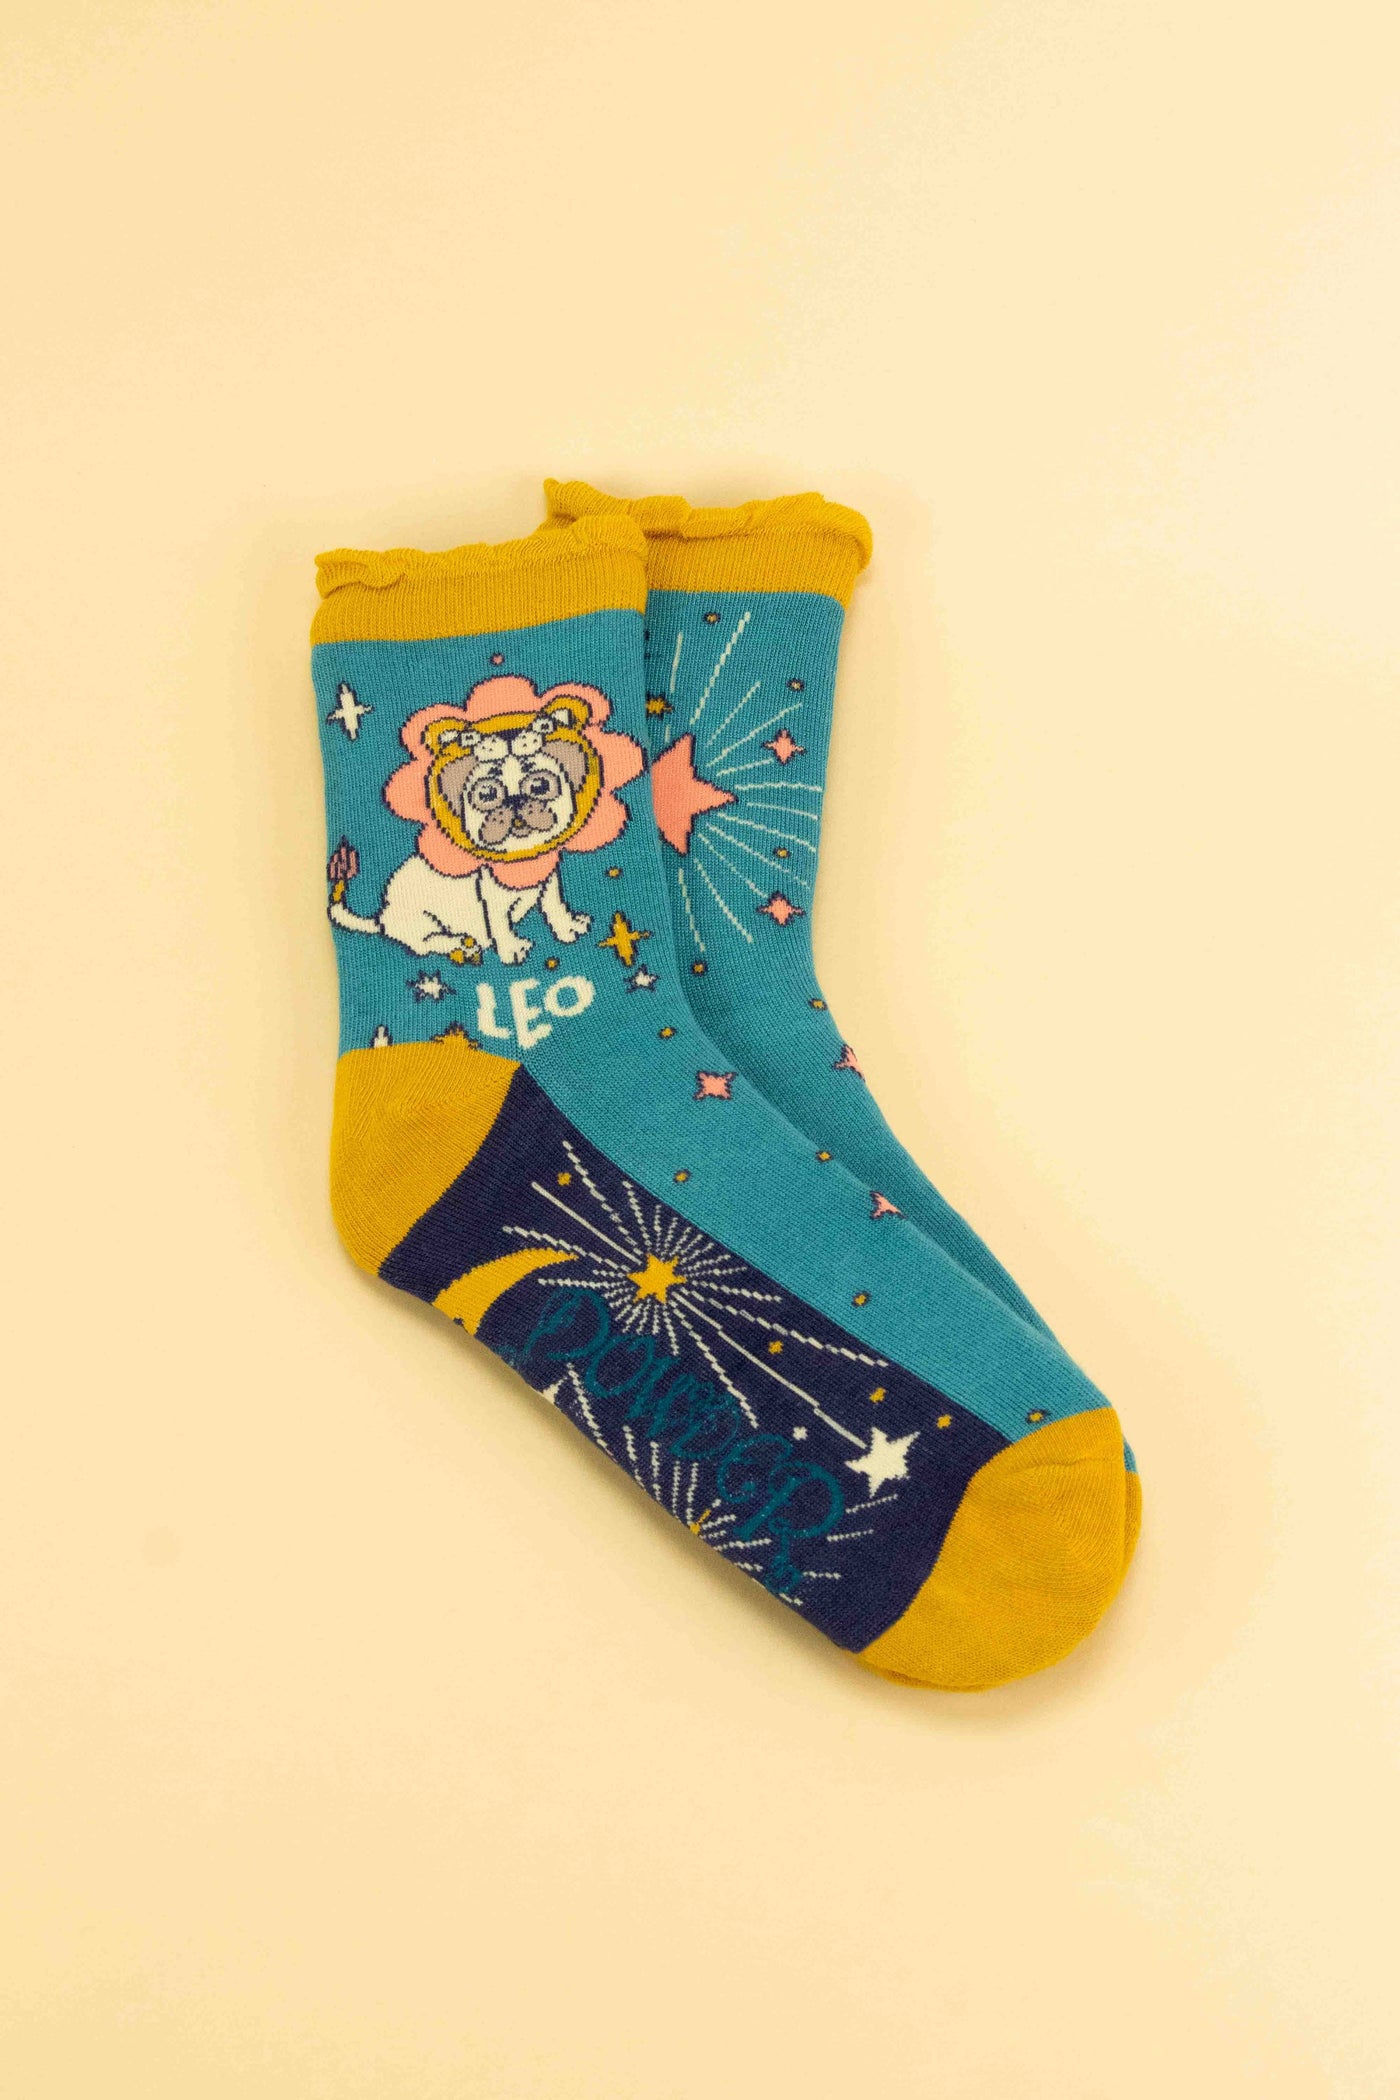 Zodiac Socks - Leo